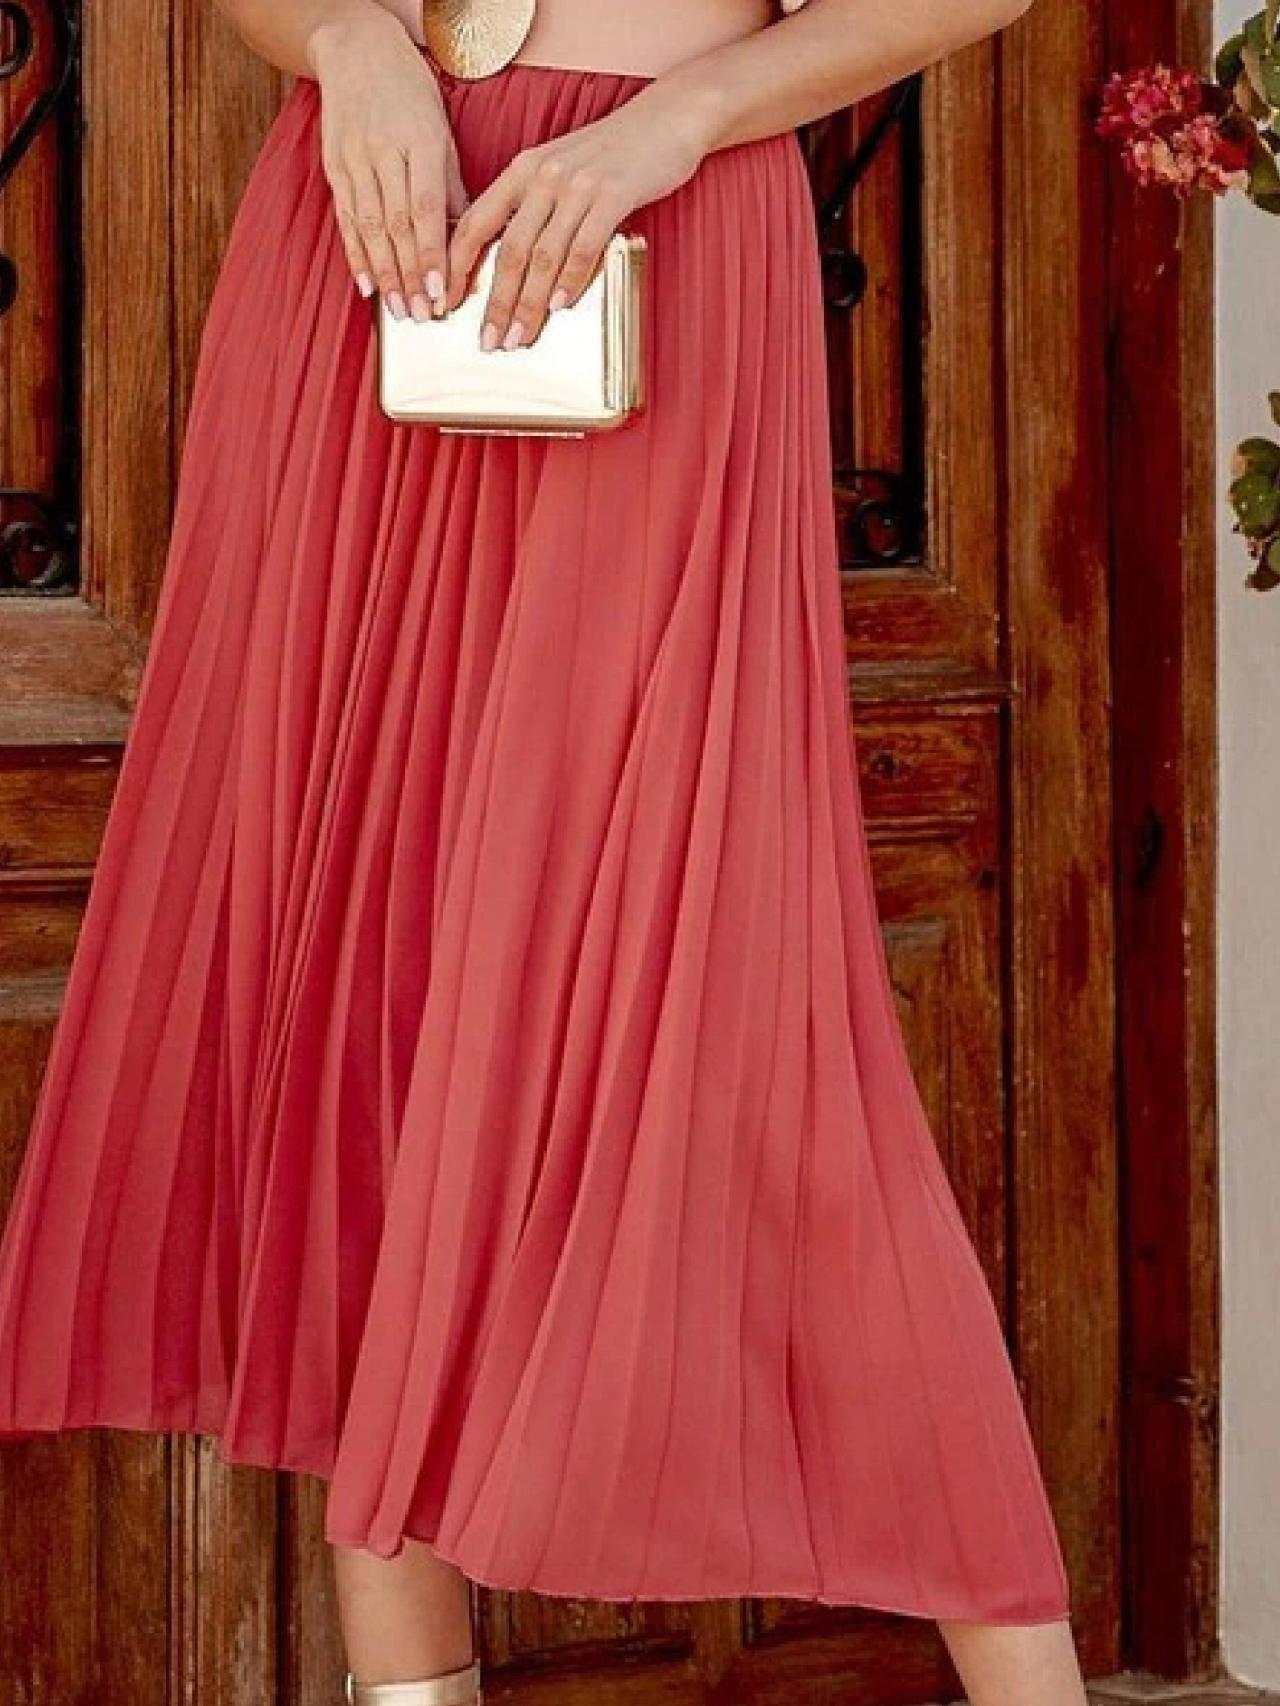 Falda plisada roja y rosa  Faldas, Faldas plisadas, Ropa